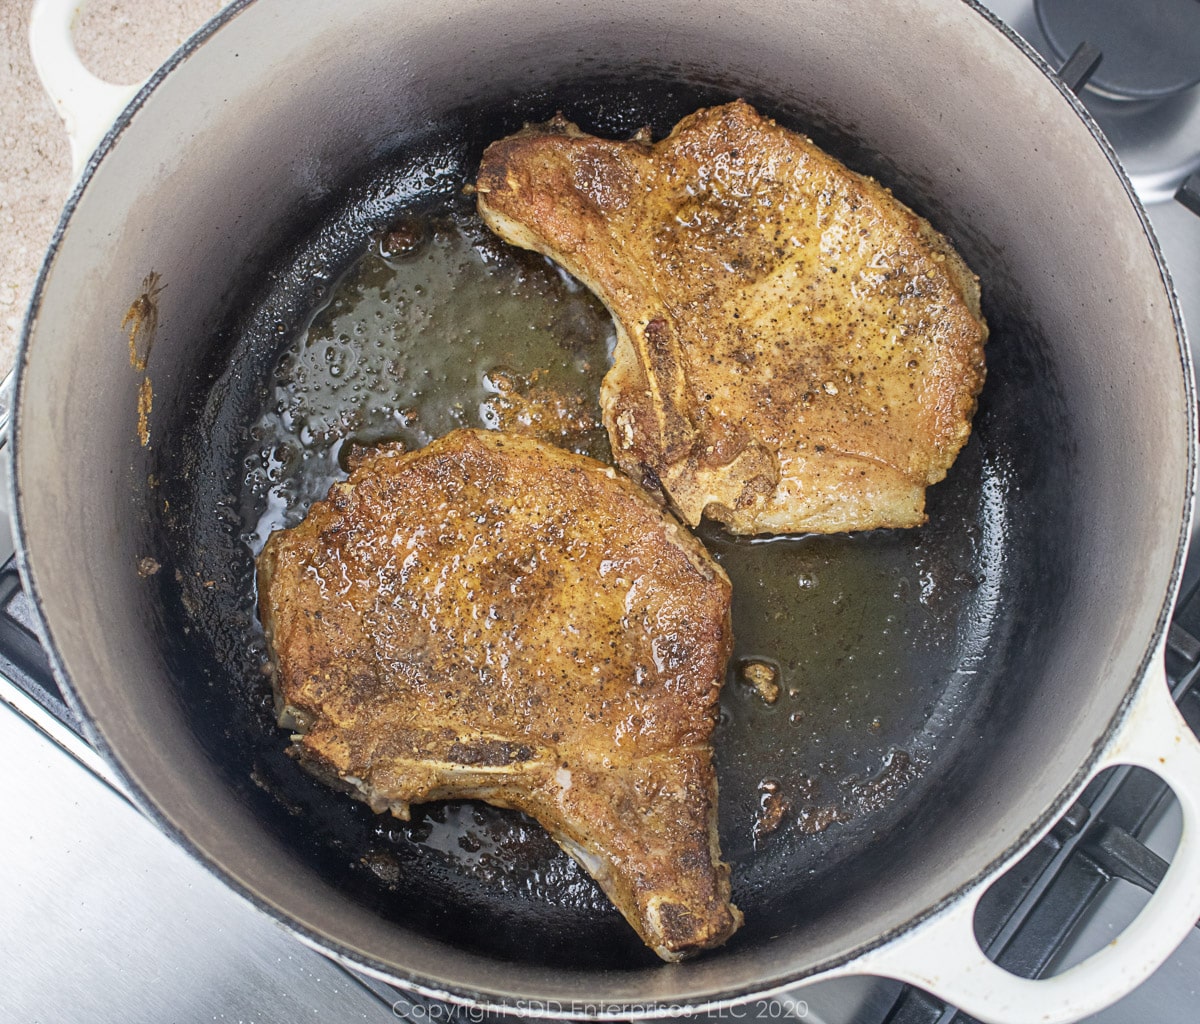 bone-in pork chops searing in a dutch oven